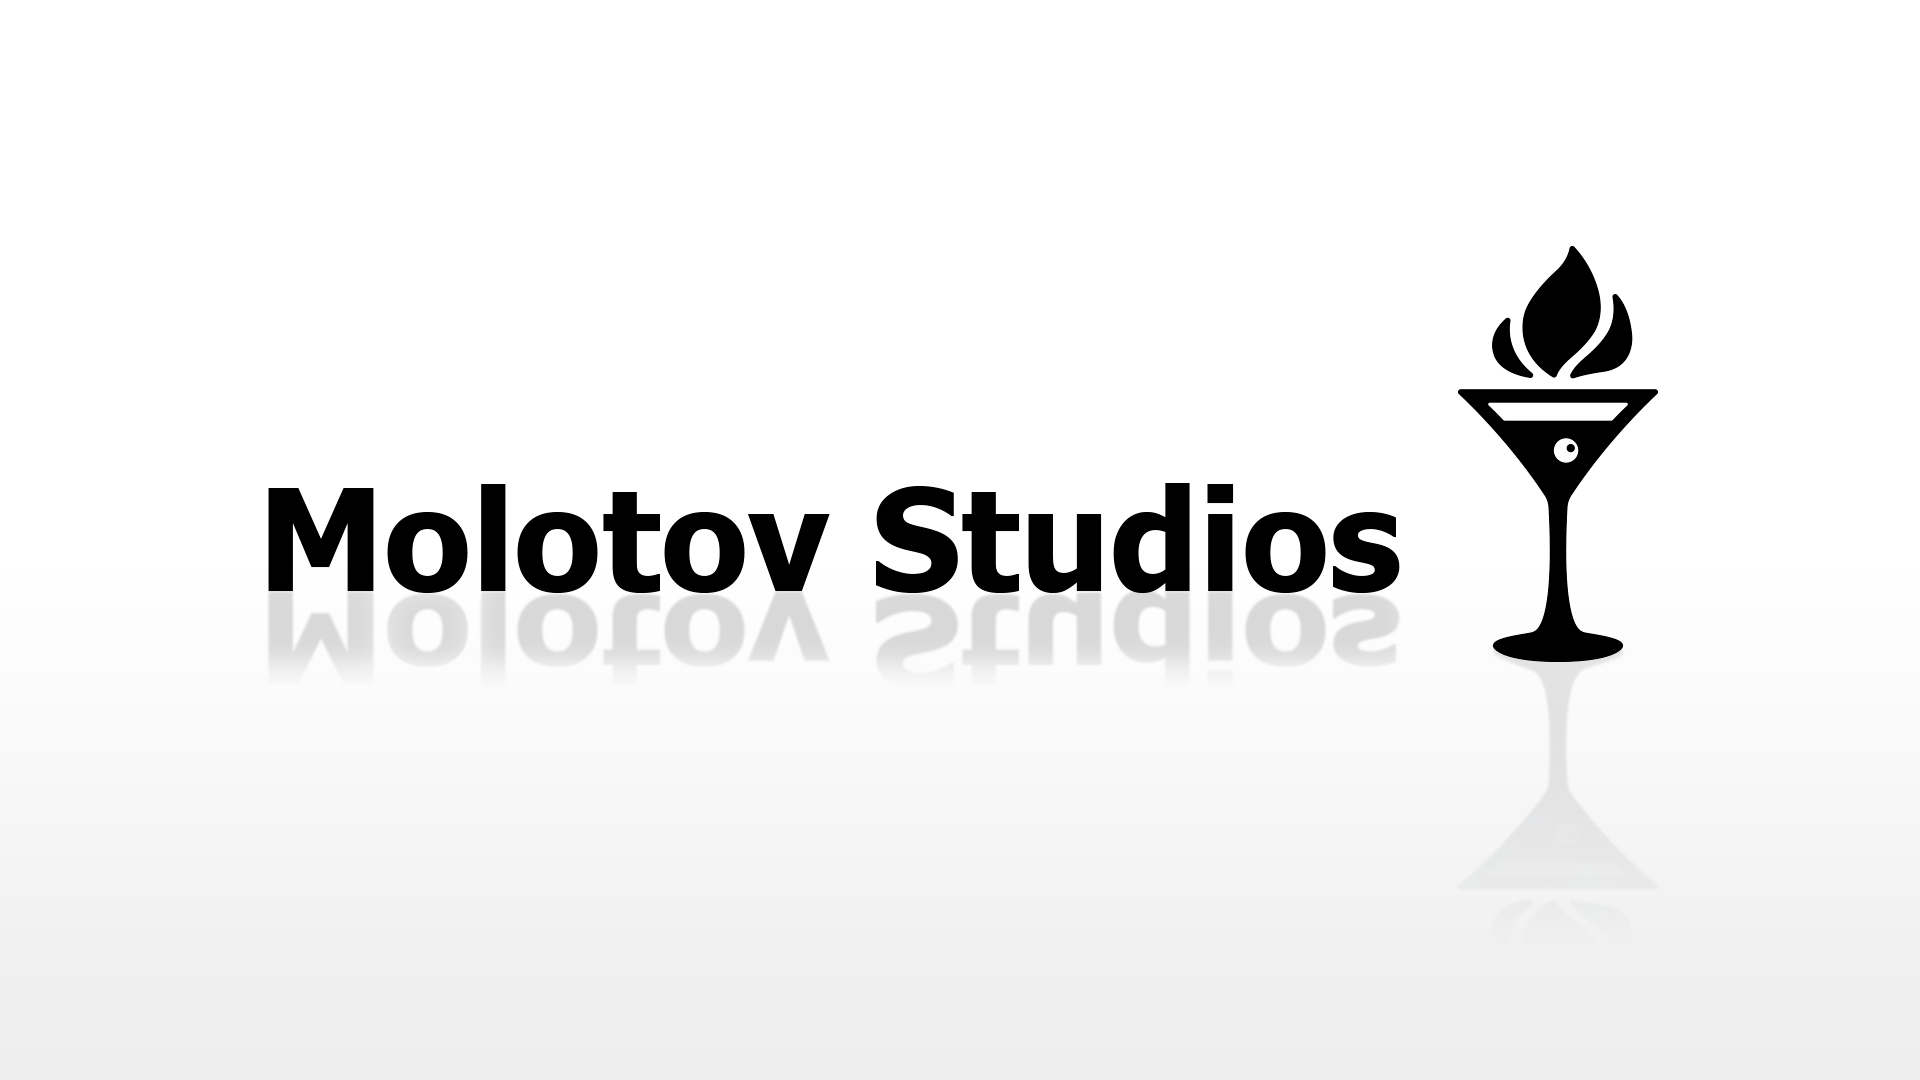 Molotov Studios